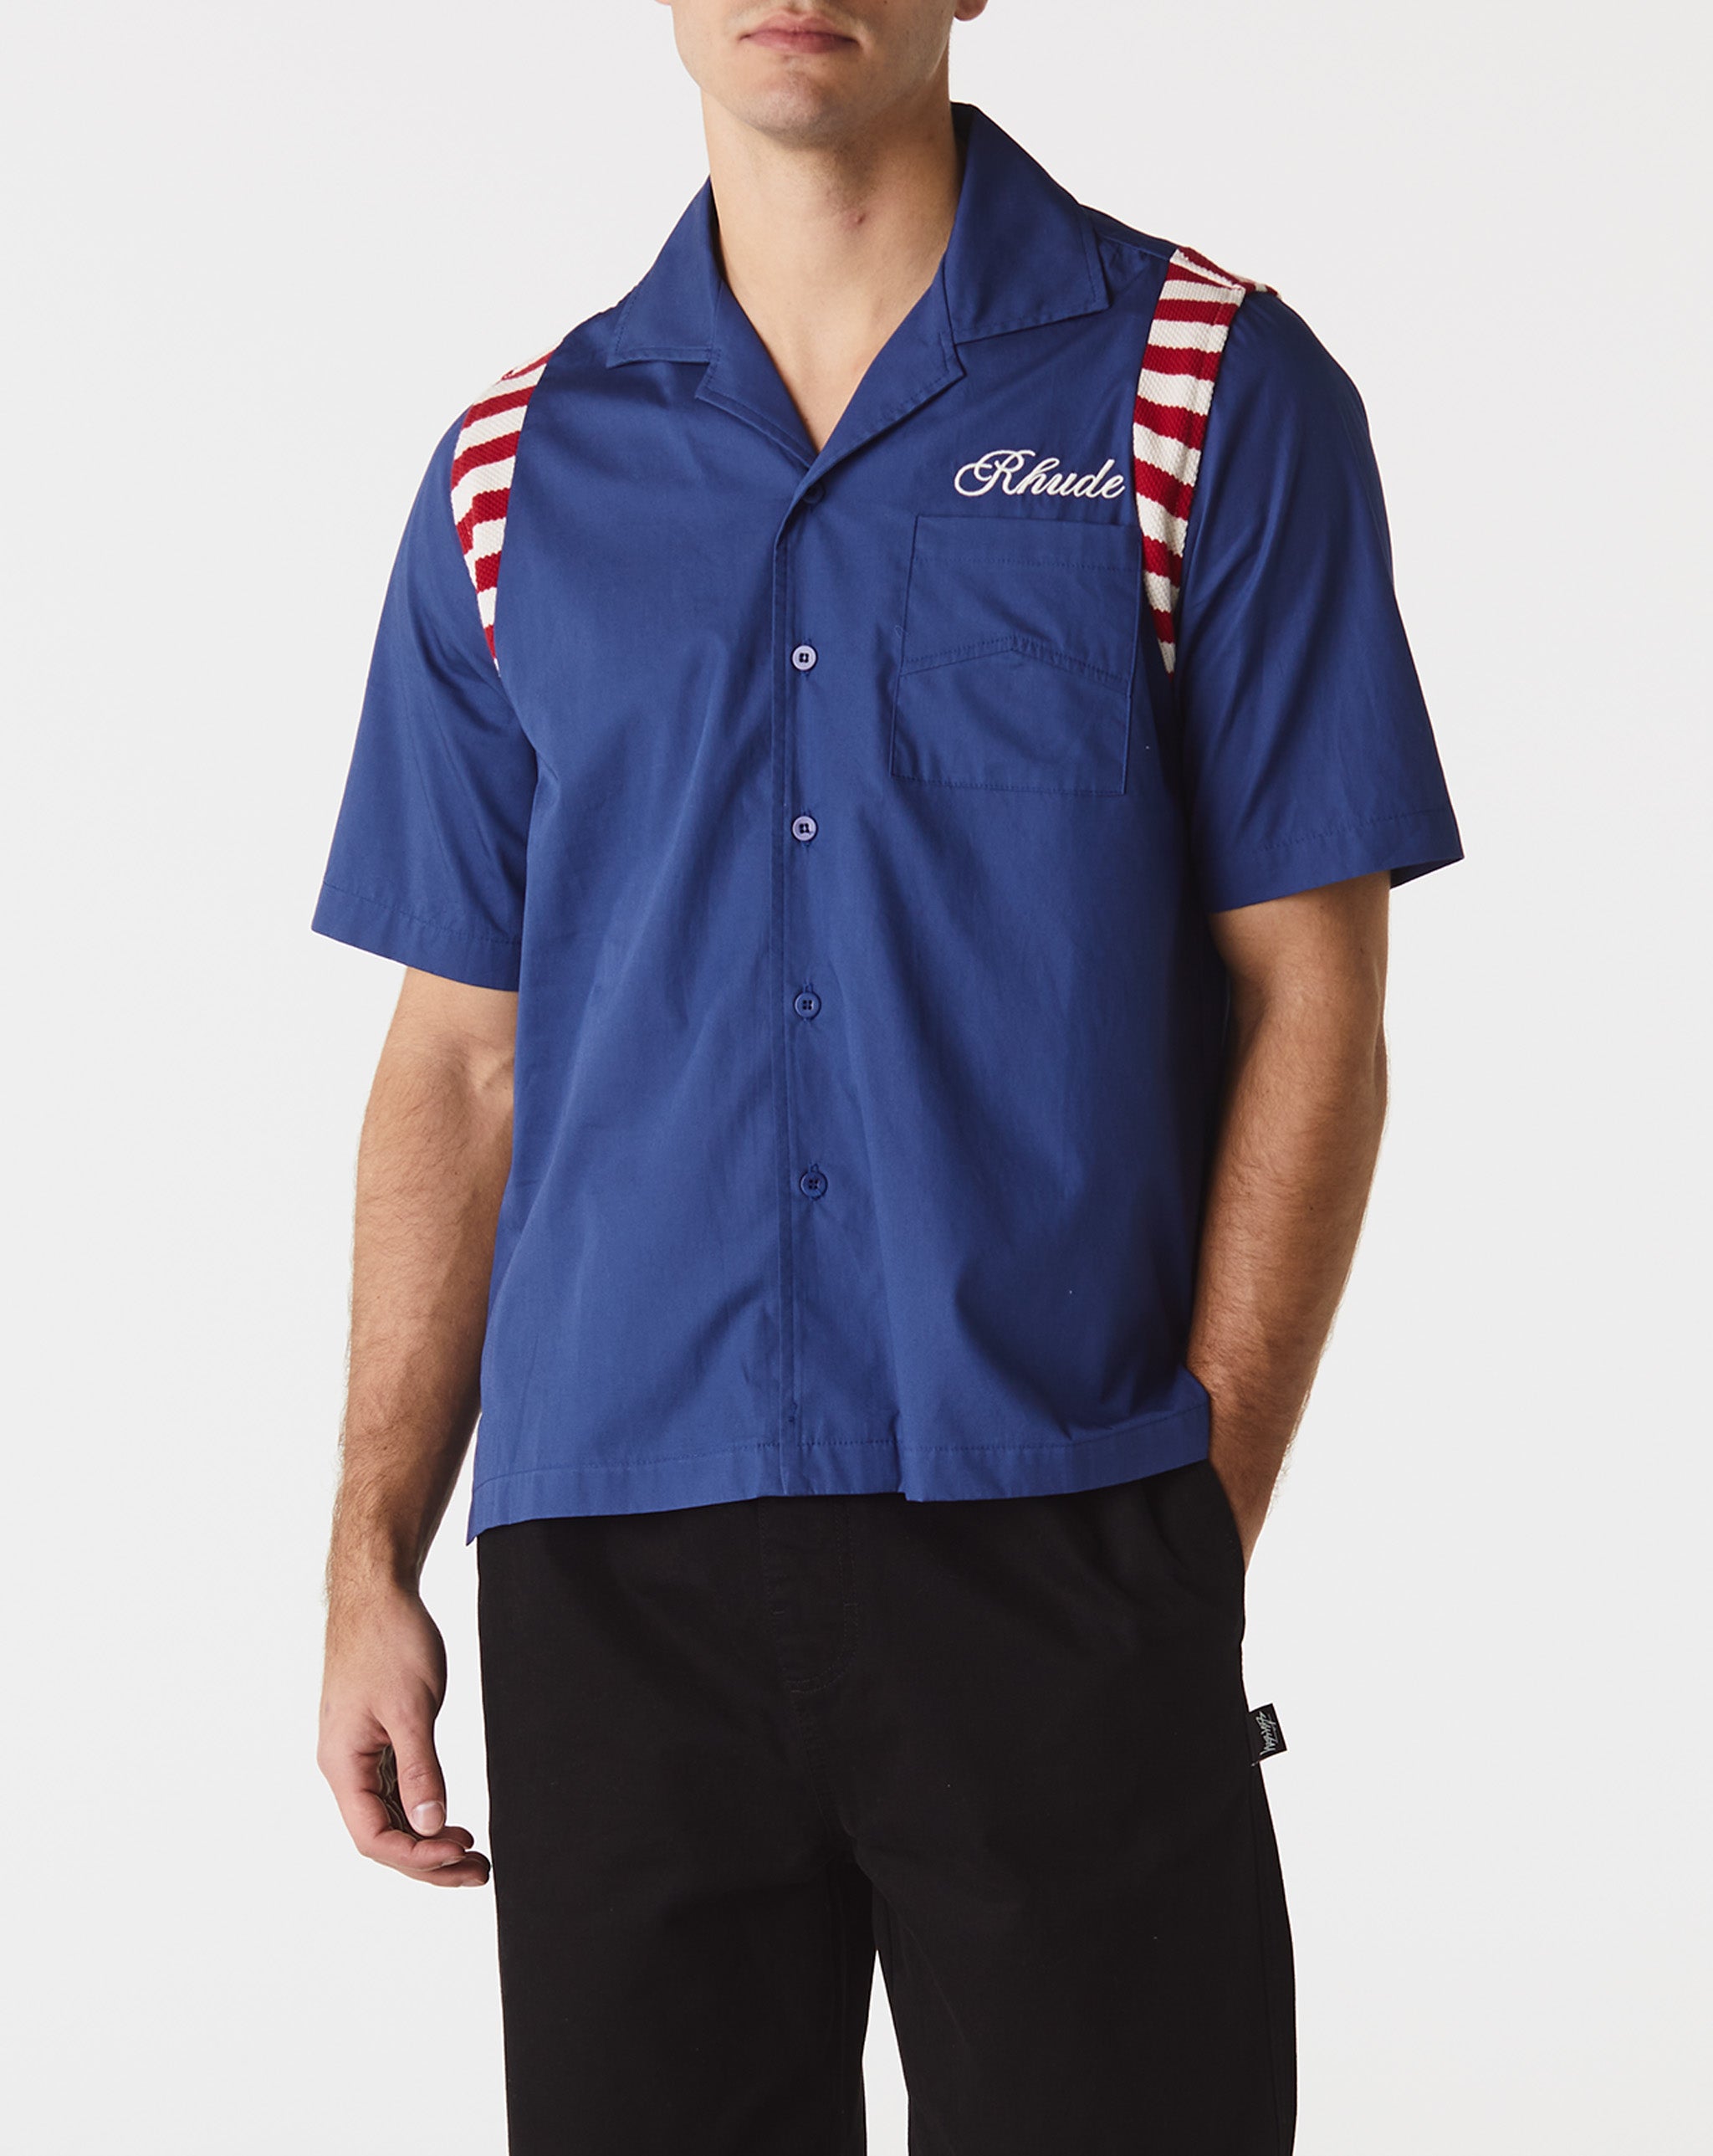 Rhude American Spirit Poplin Shirt  - Cheap Urlfreeze Jordan outlet